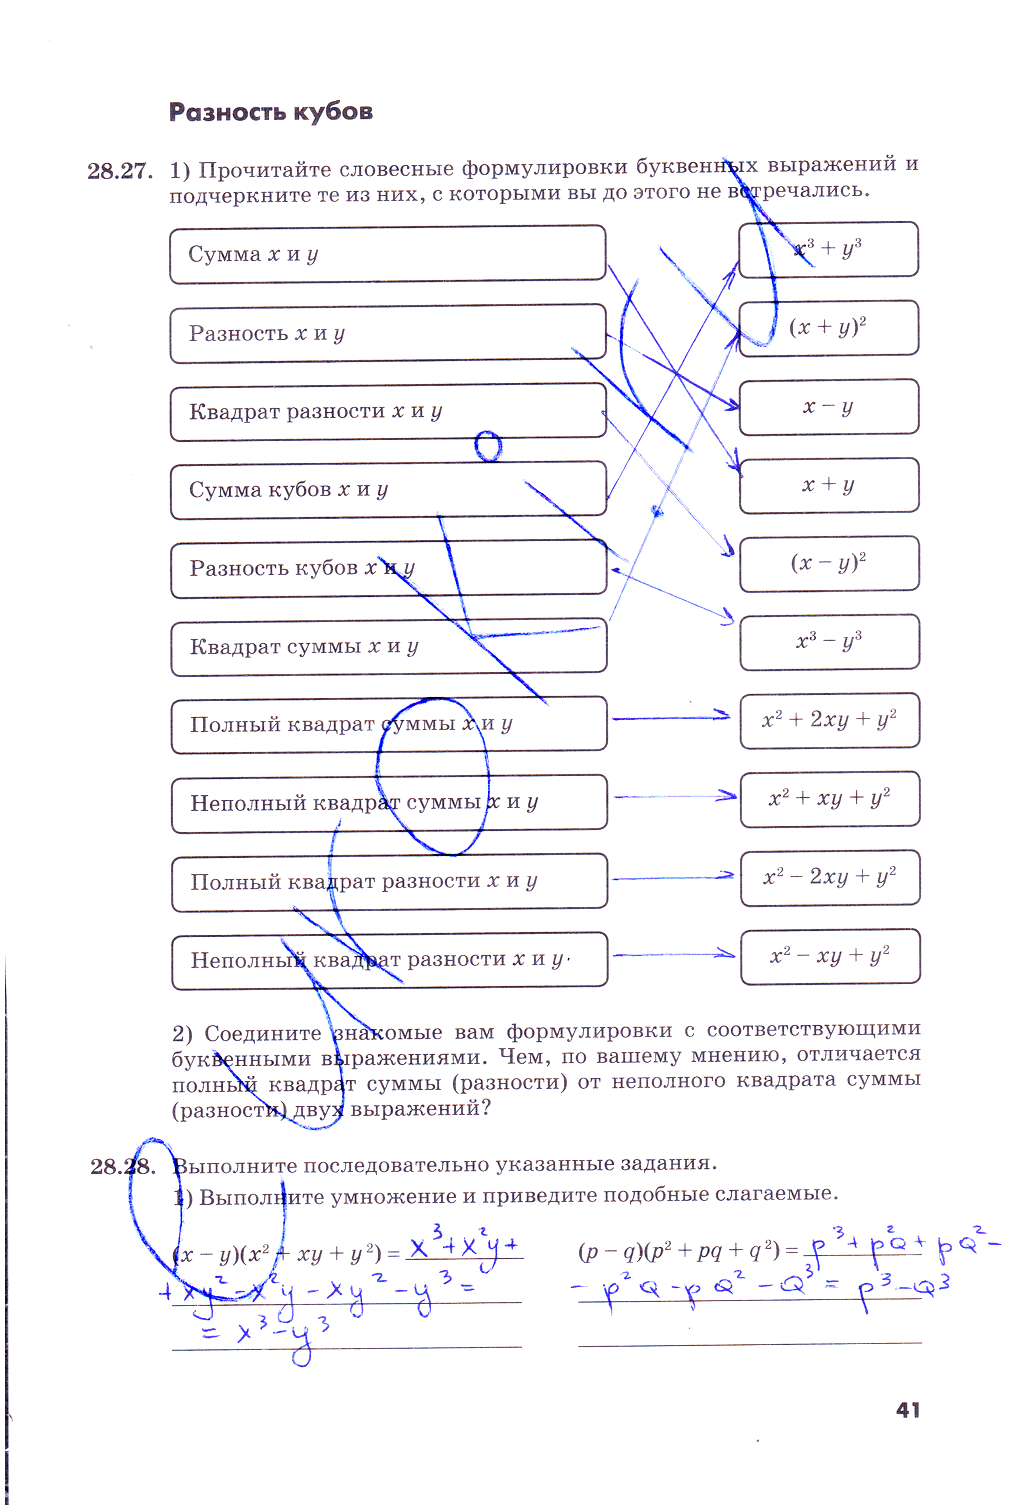 гдз 7 класс рабочая тетрадь часть 2 страница 41 алгебра Зубарева, Мильштейн